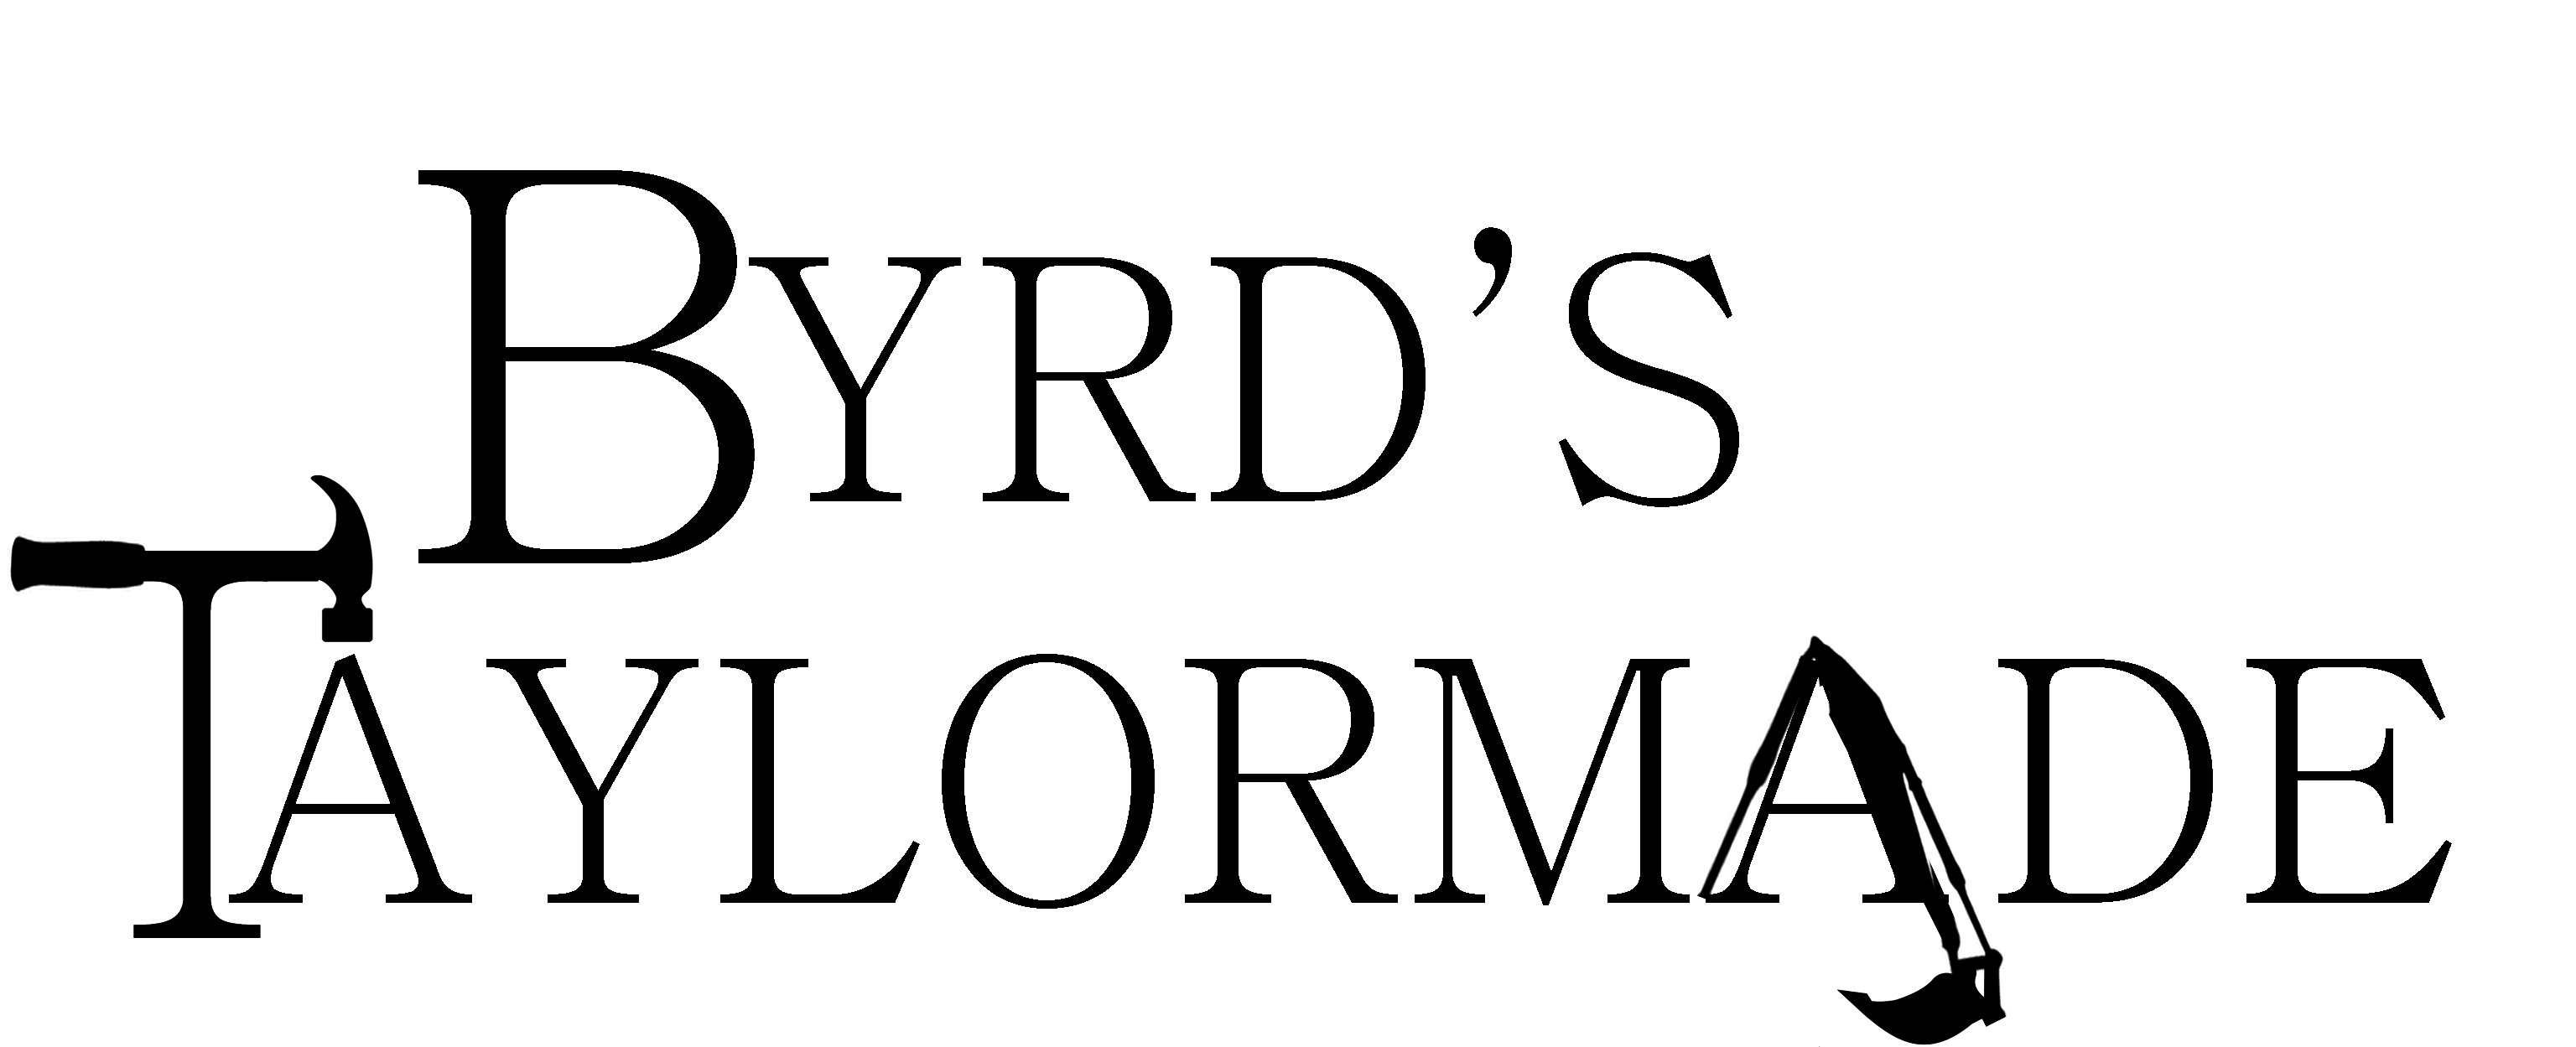 Byrds Taylormade Logo